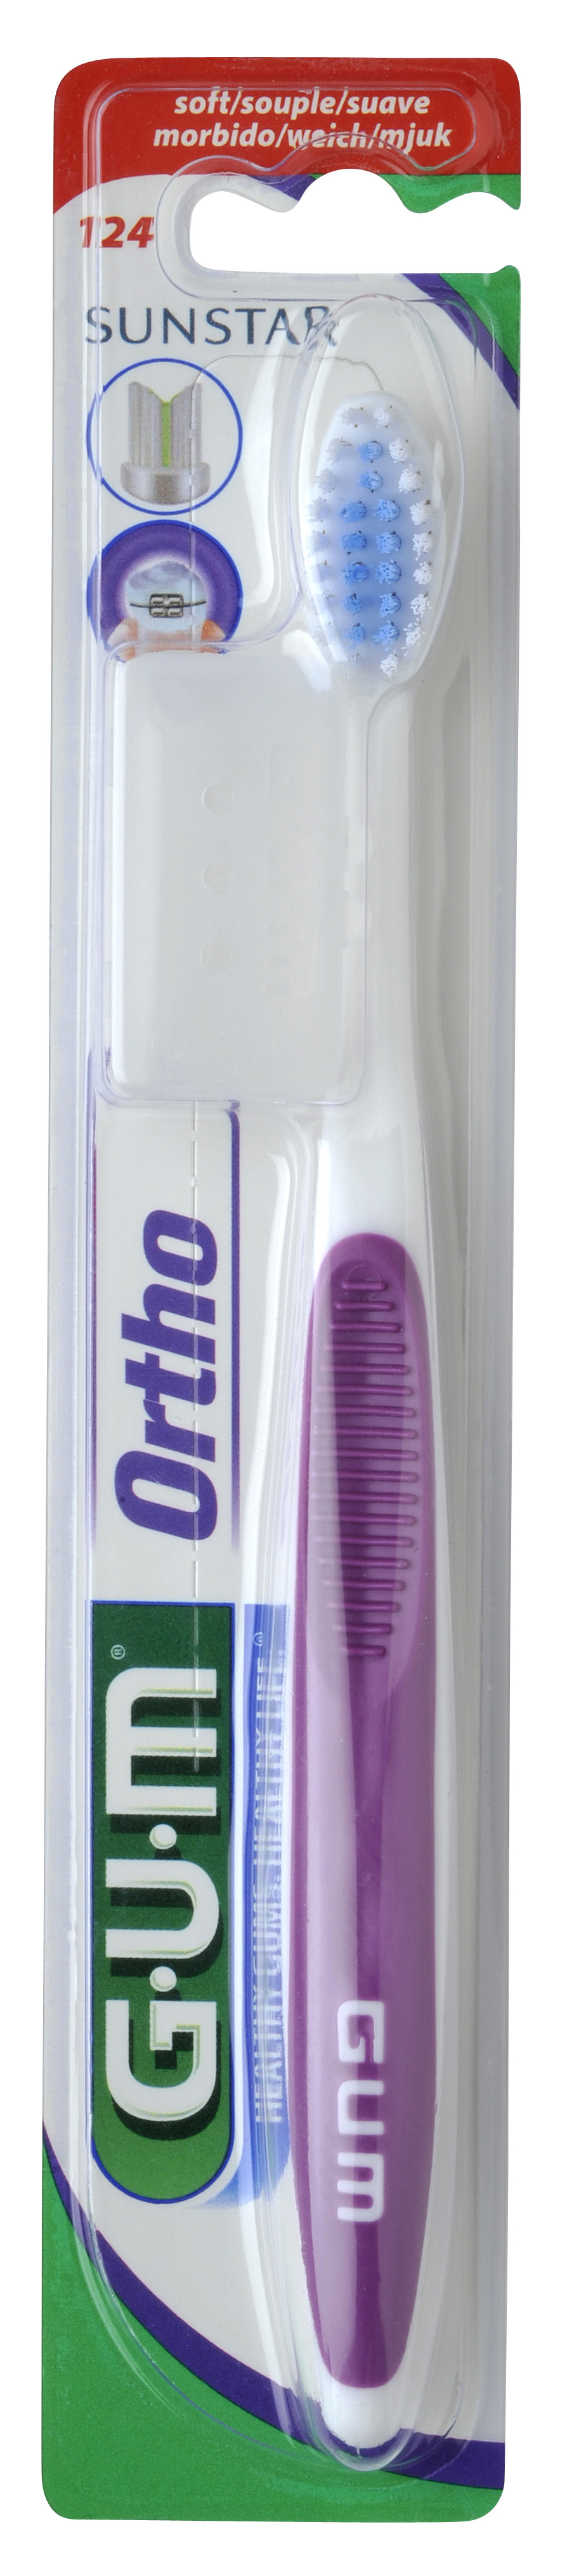 G·U·M Orthodontic Toothbrush with Cap: แปรงสีฟันสำหรับผู้จัดฟันพร้อมฝาครอบ